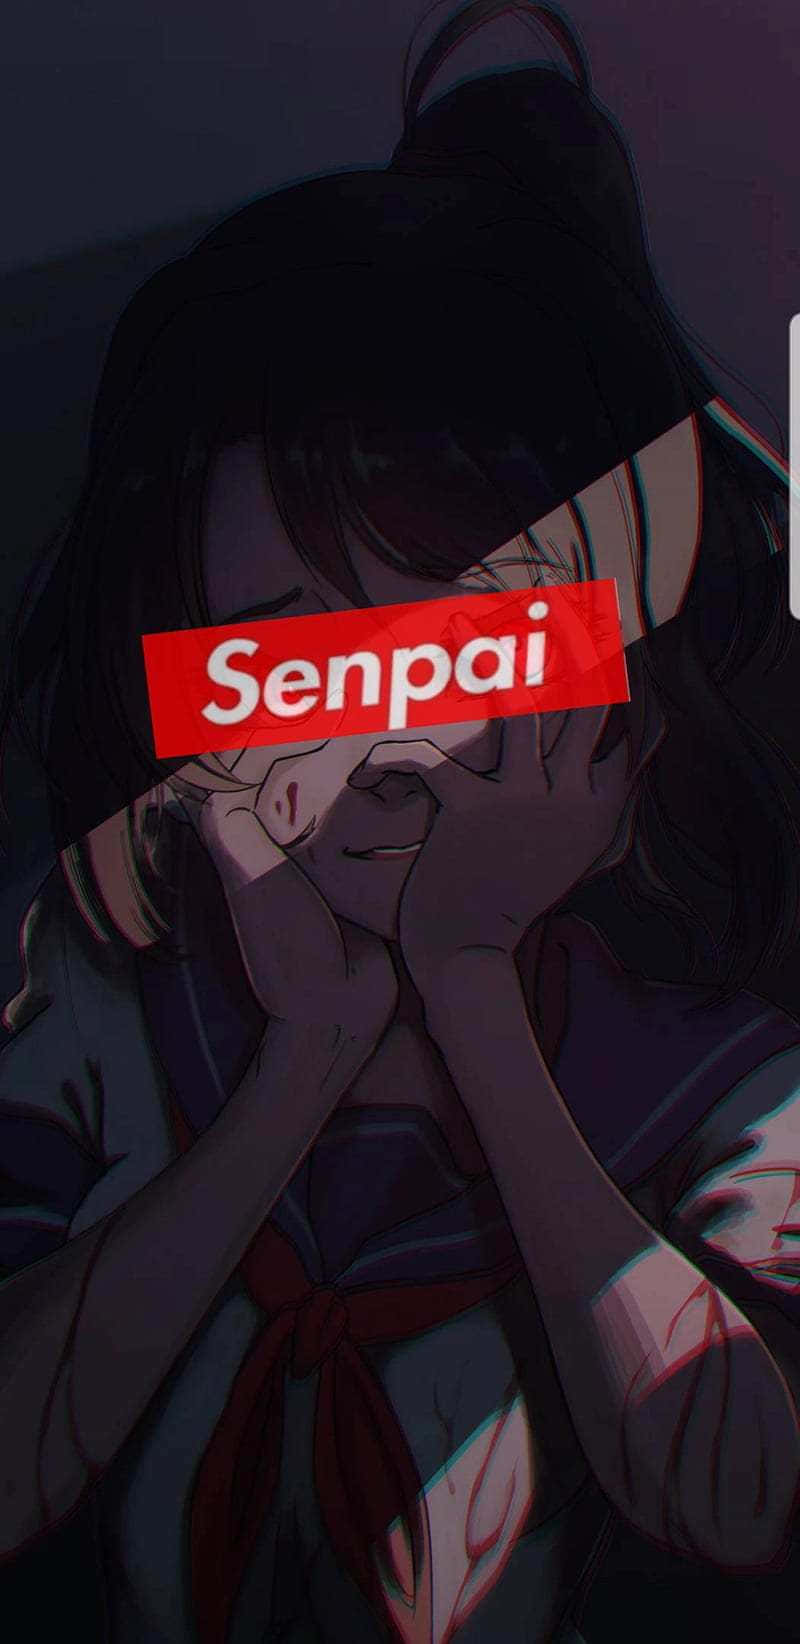 Blushing Anime Girl With Senpai Bar Background